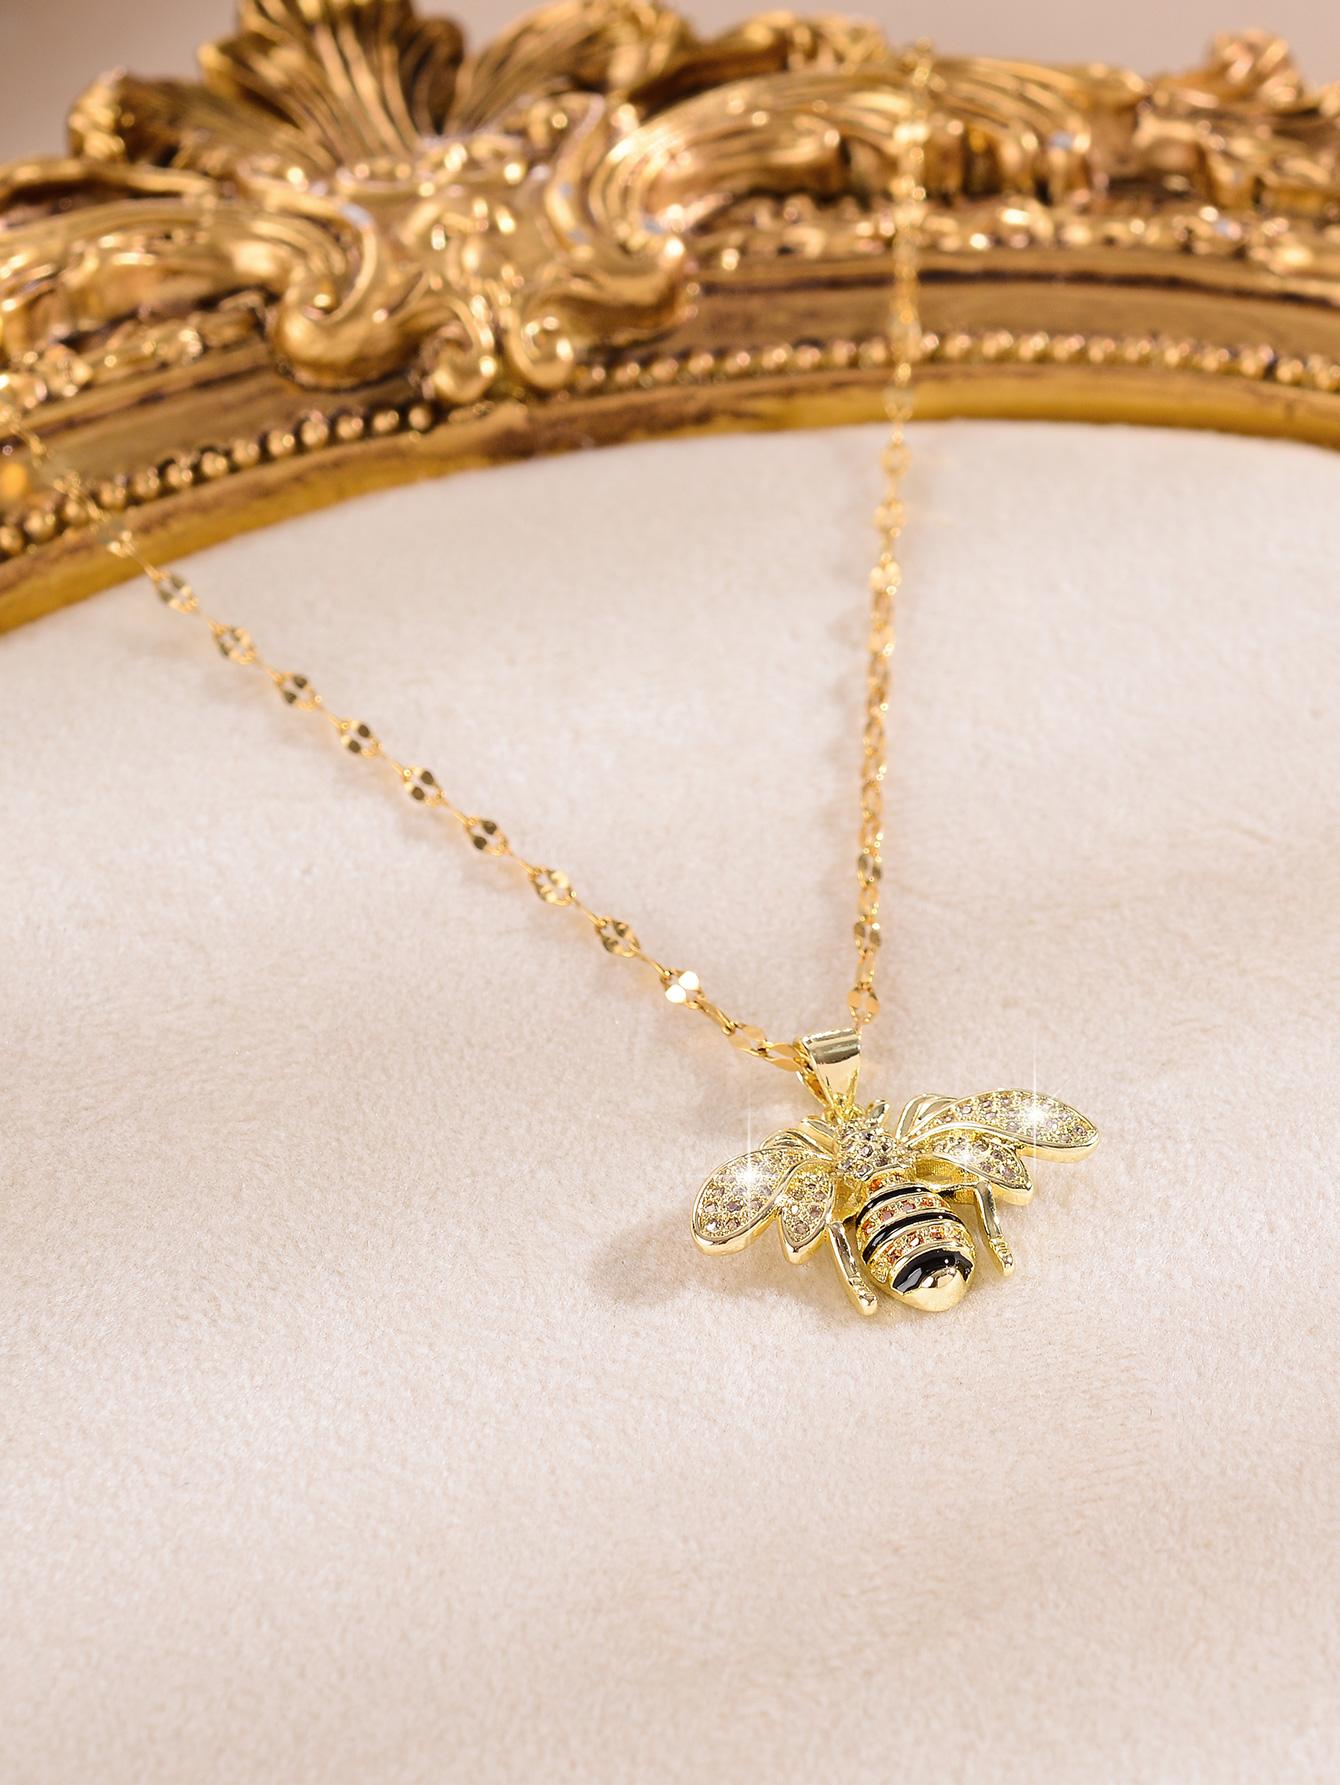 Exquisite Rhinestone Bee Charm Necklace